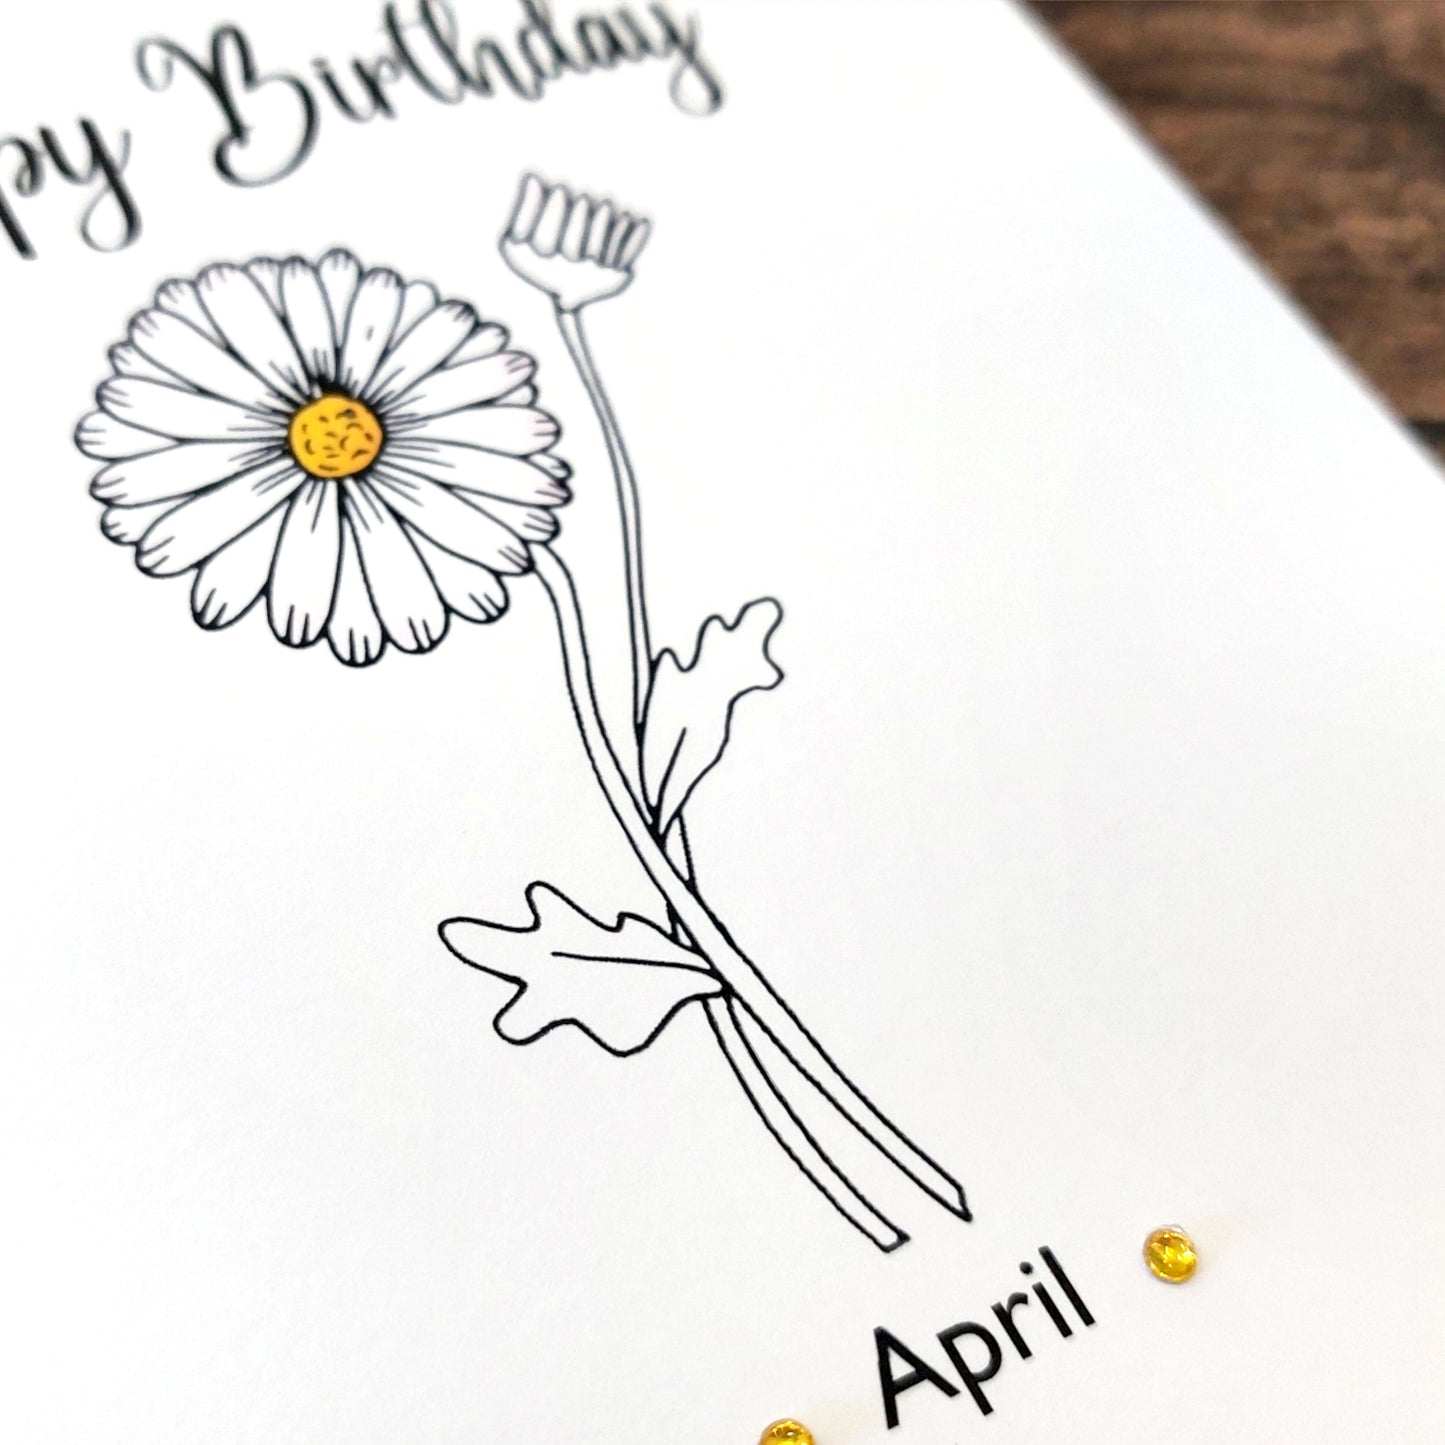 April - Daisy - Birthday Flower Card